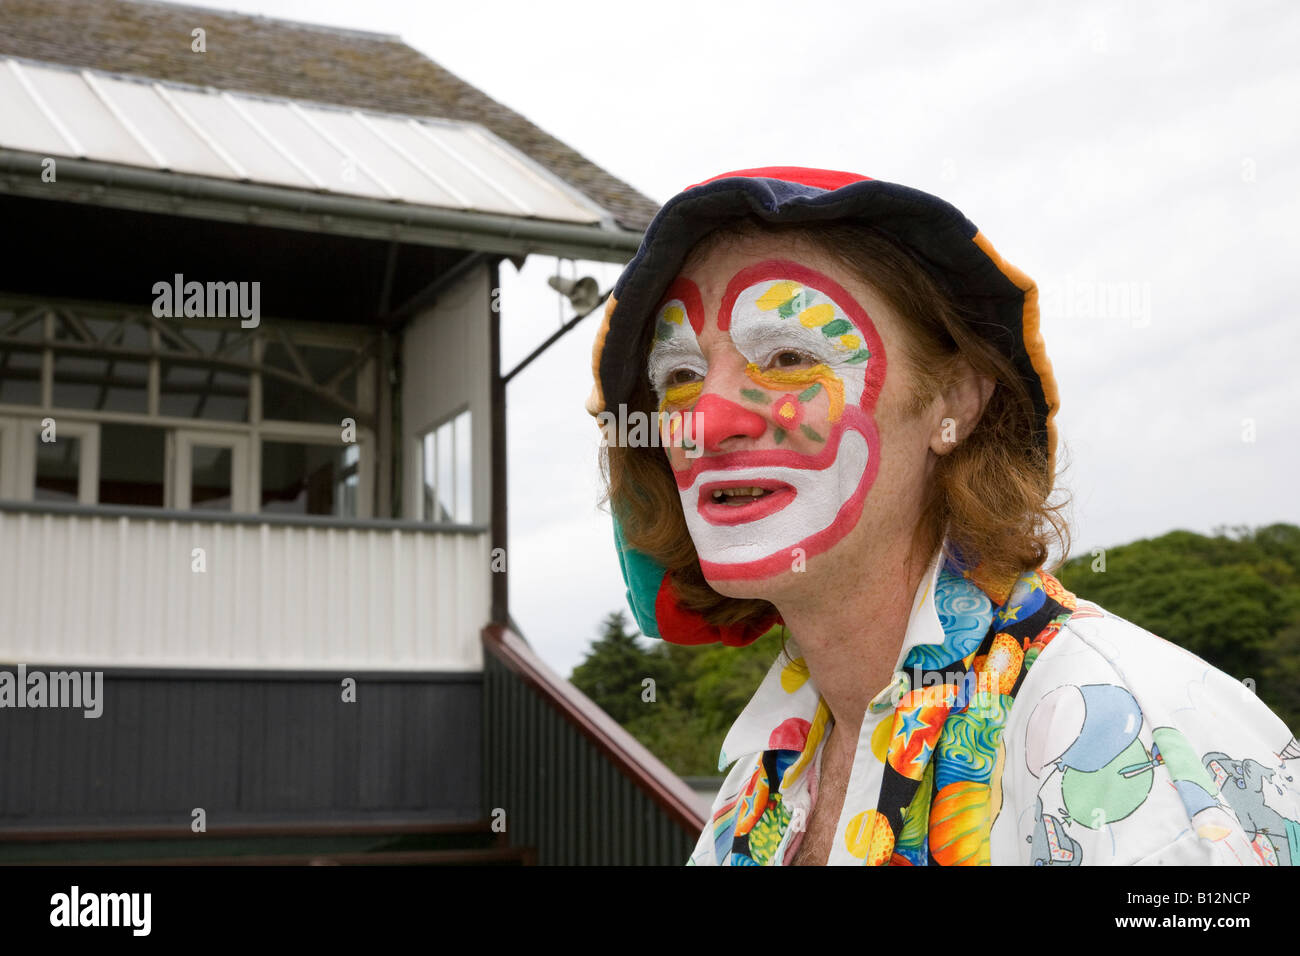 Les courses de chevaux ont participé à l'événement de Stevie (MR) le clown professionnel et de marionnettes à la réunion de courses à l'hippodrome de Perth, Ecosse, Royaume-Uni Tayside Banque D'Images